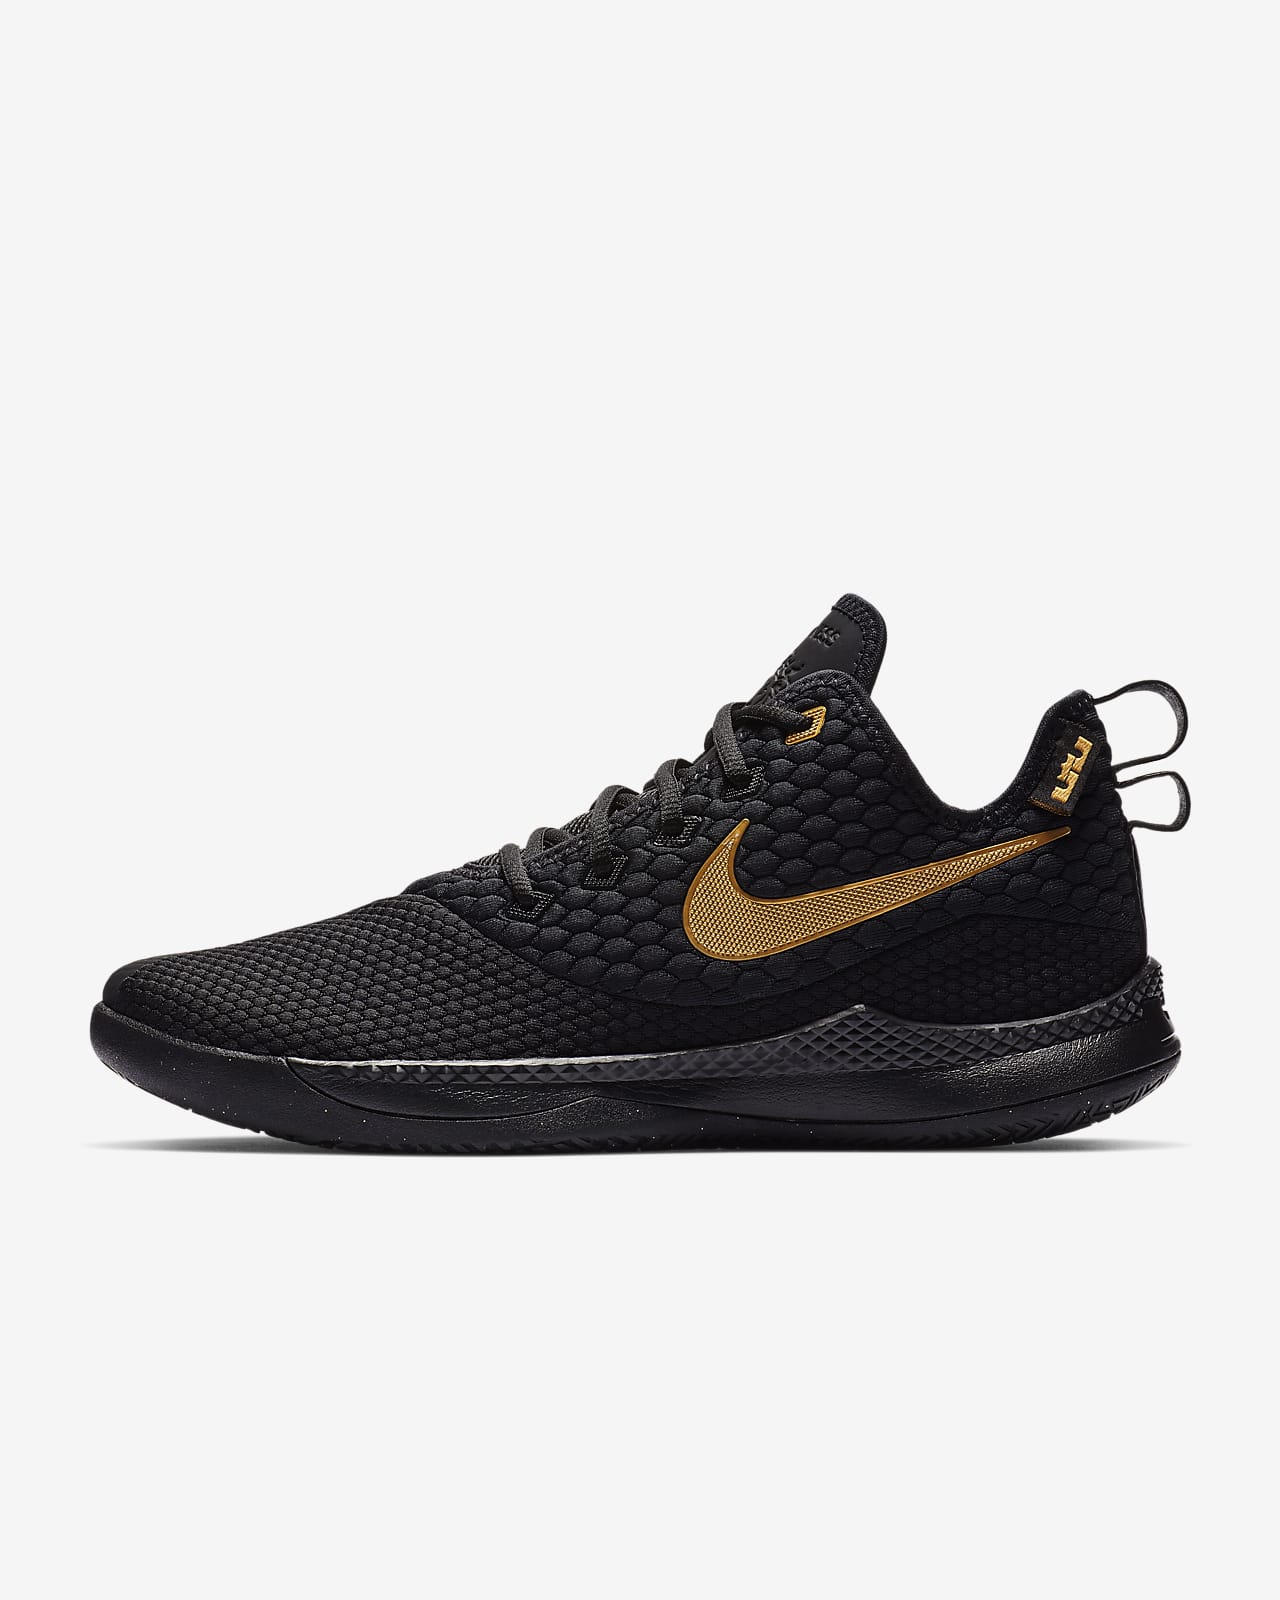 LeBron Witness III Men's Shoe. Nike ID